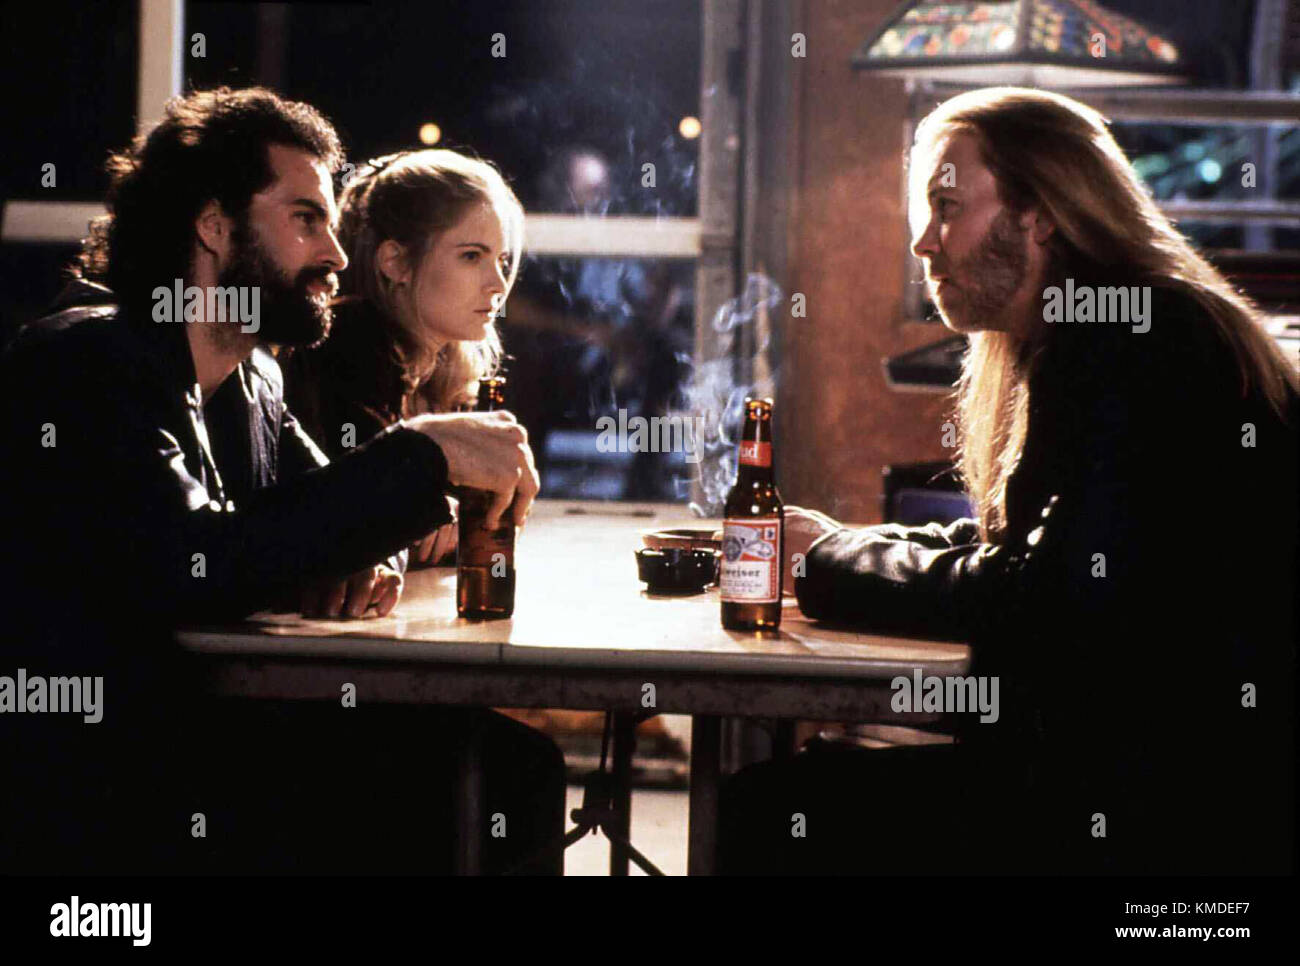 Fieberhaft aka. Rush, USA 1991 Regie: Lili Fini Zanuck Darsteller: Jason Patric, Jennifer Jason Leigh Stock Photo